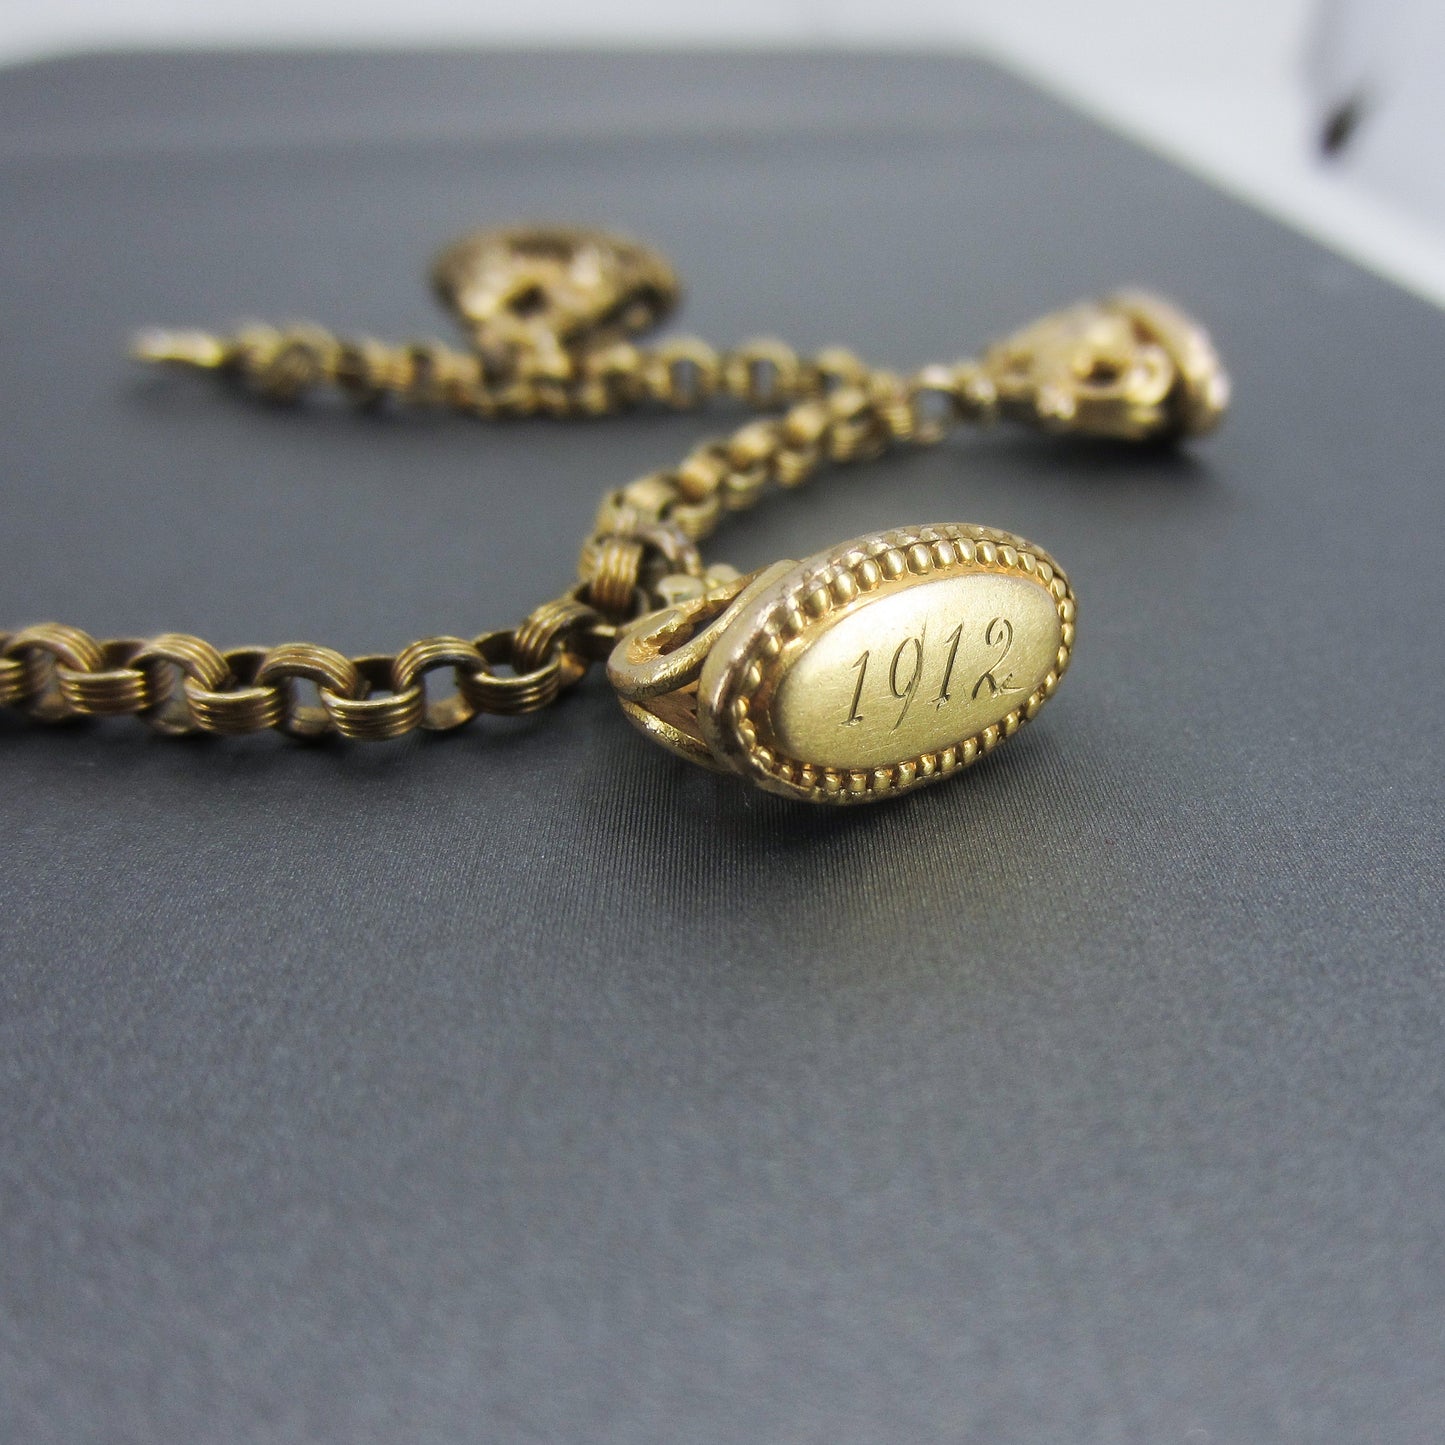 SOLD-Antique Seal Fob Charm Bracelet Gold-Filled c. 1900